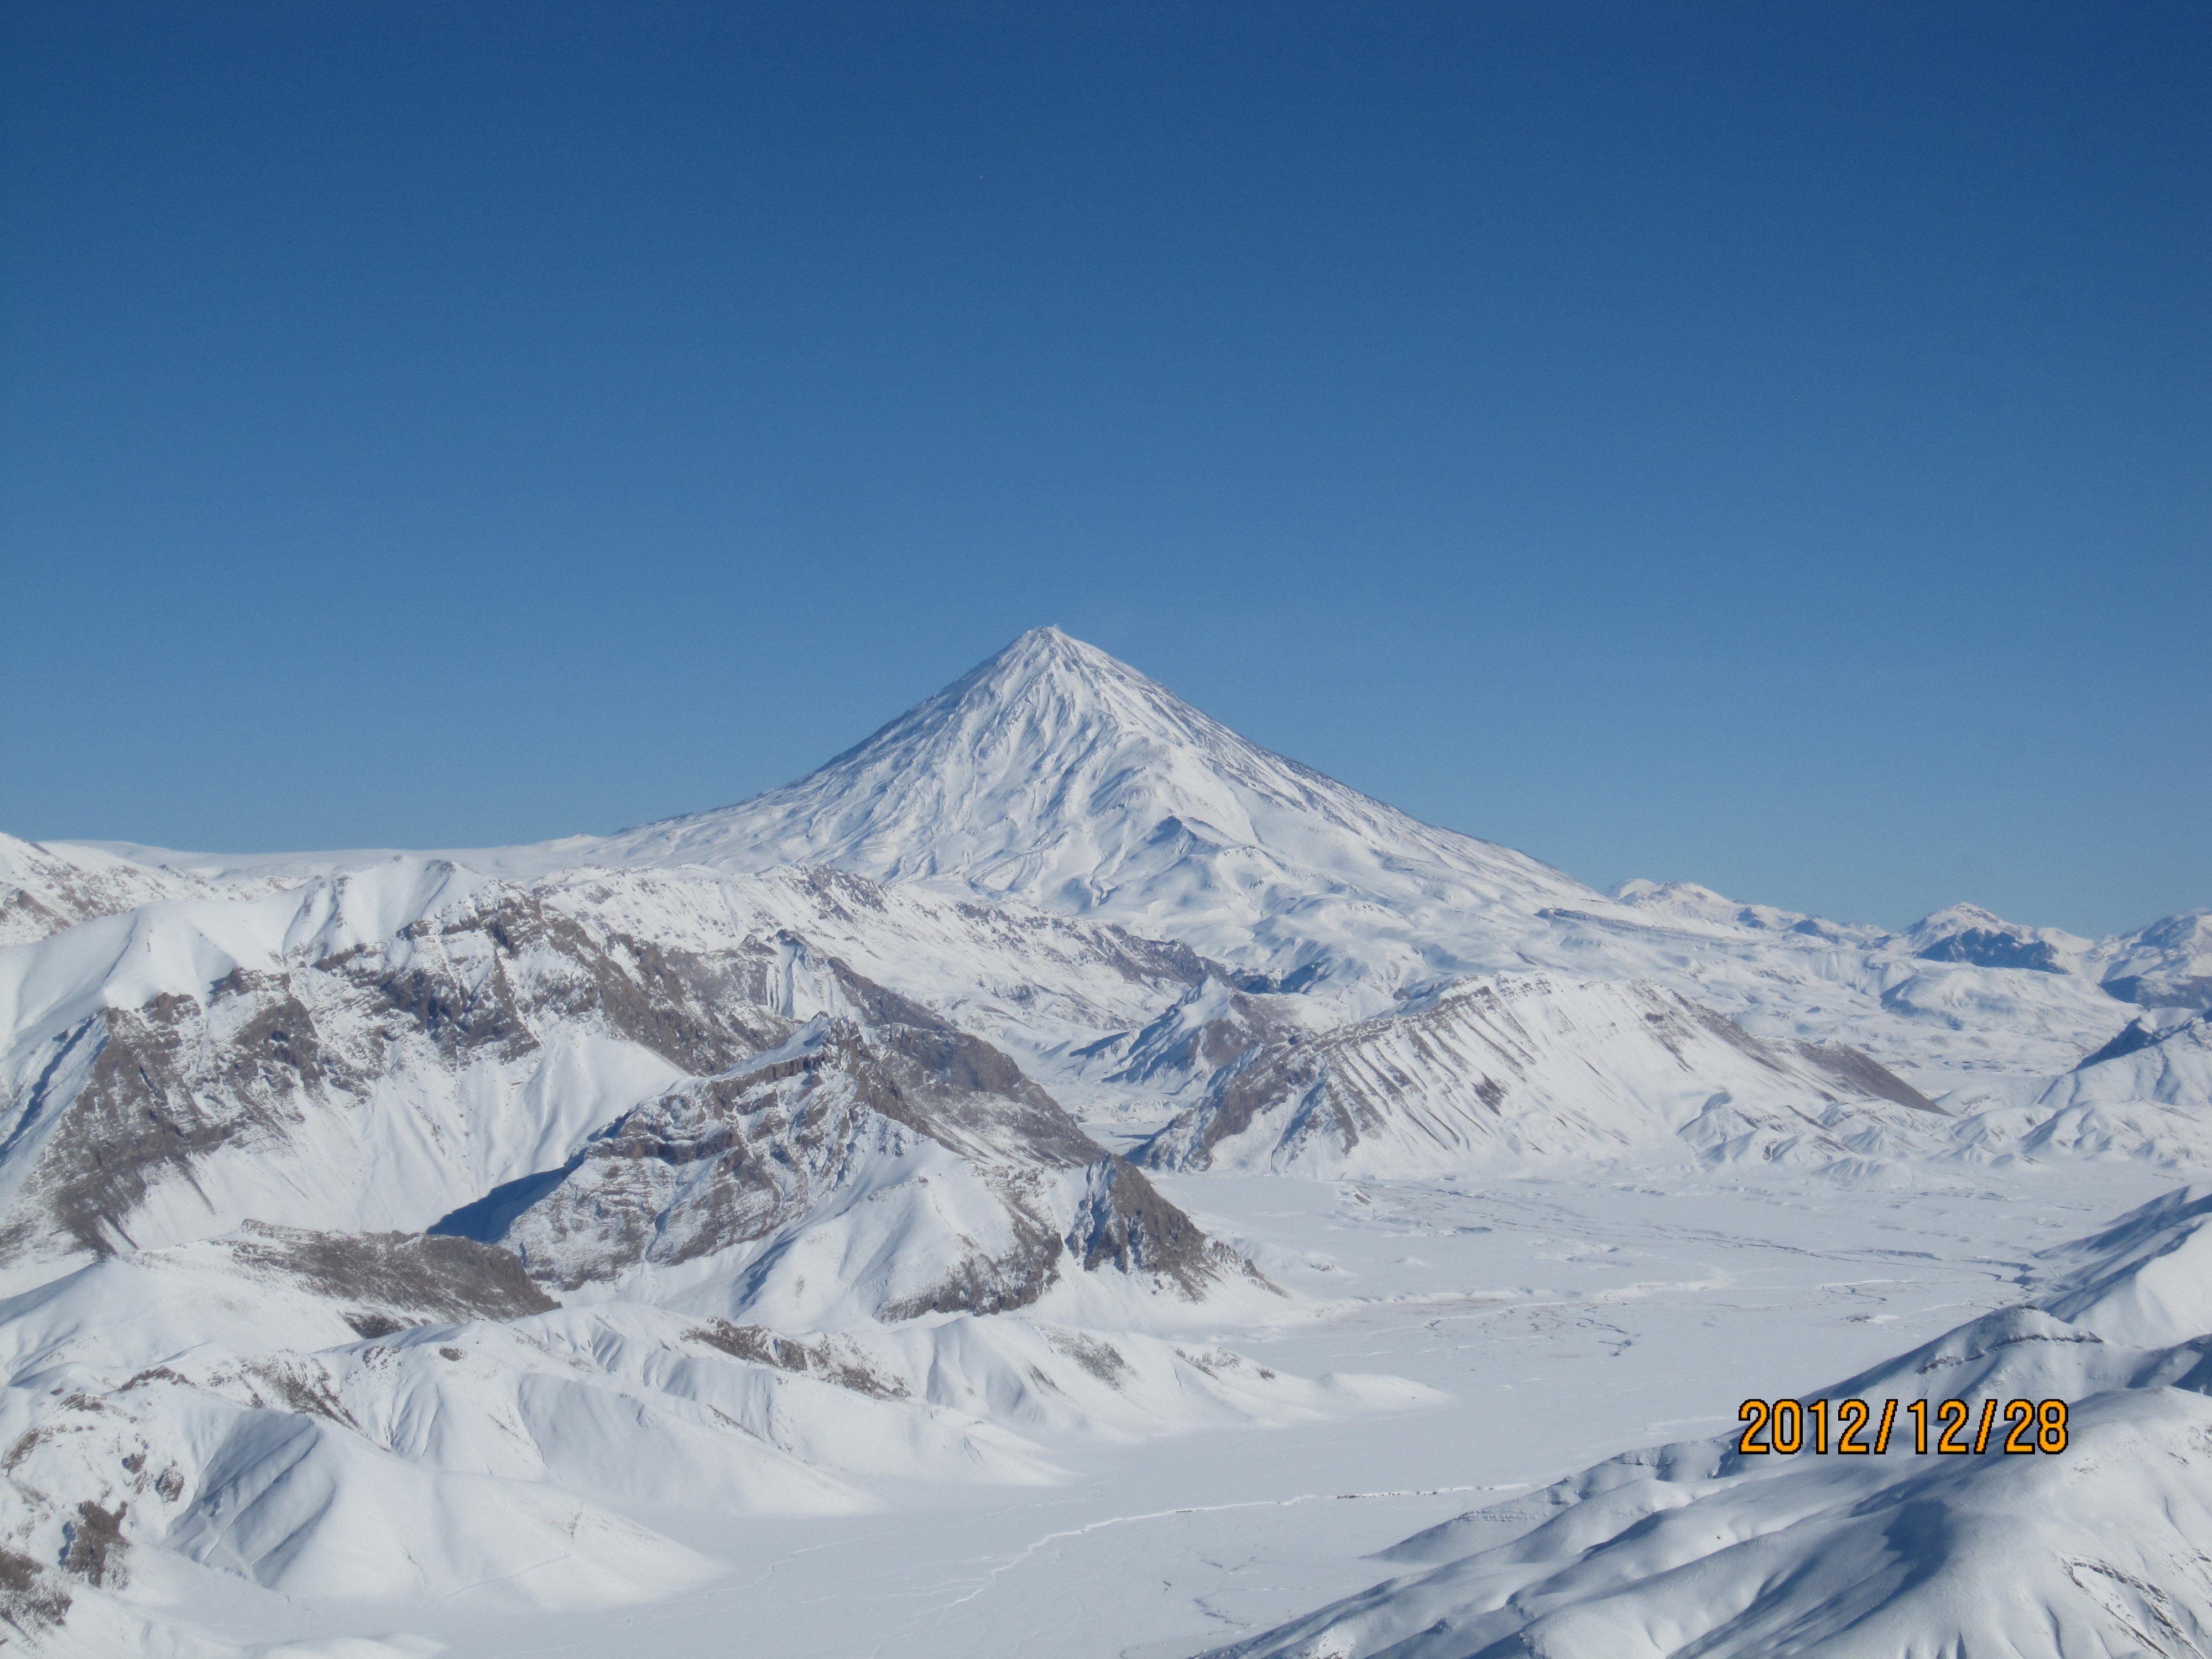 دماوند از فراز قله ريزان, Mount Damavand